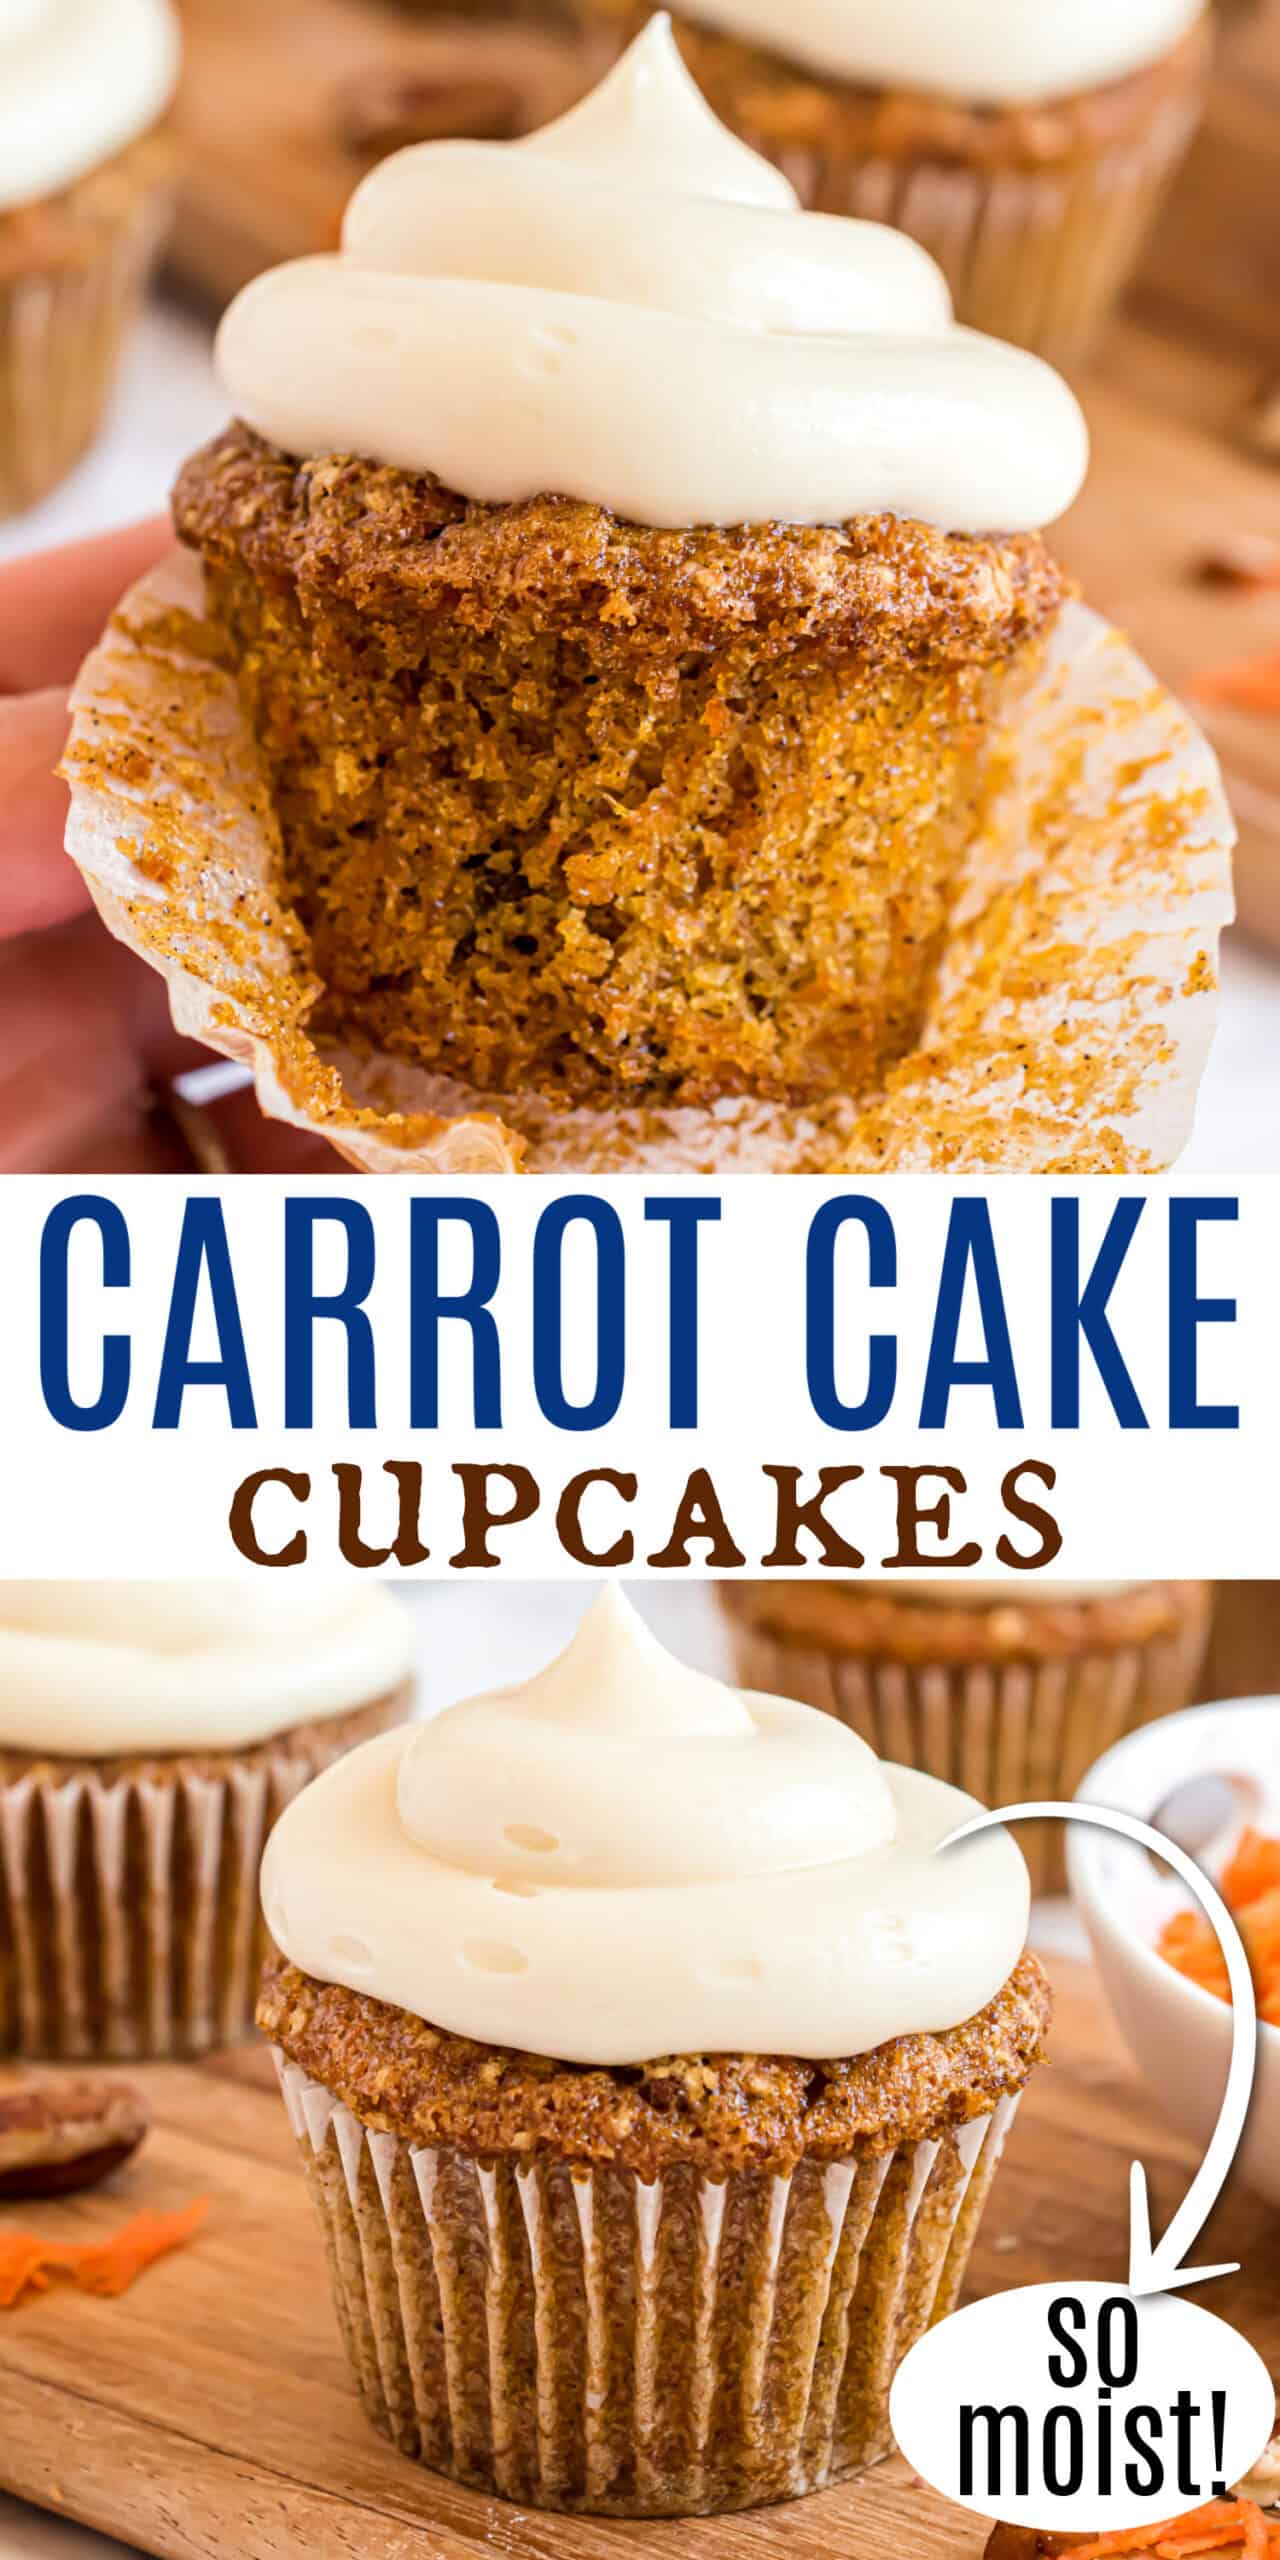 Carrot Cake Cupcakes Recipe - Shugary Sweets